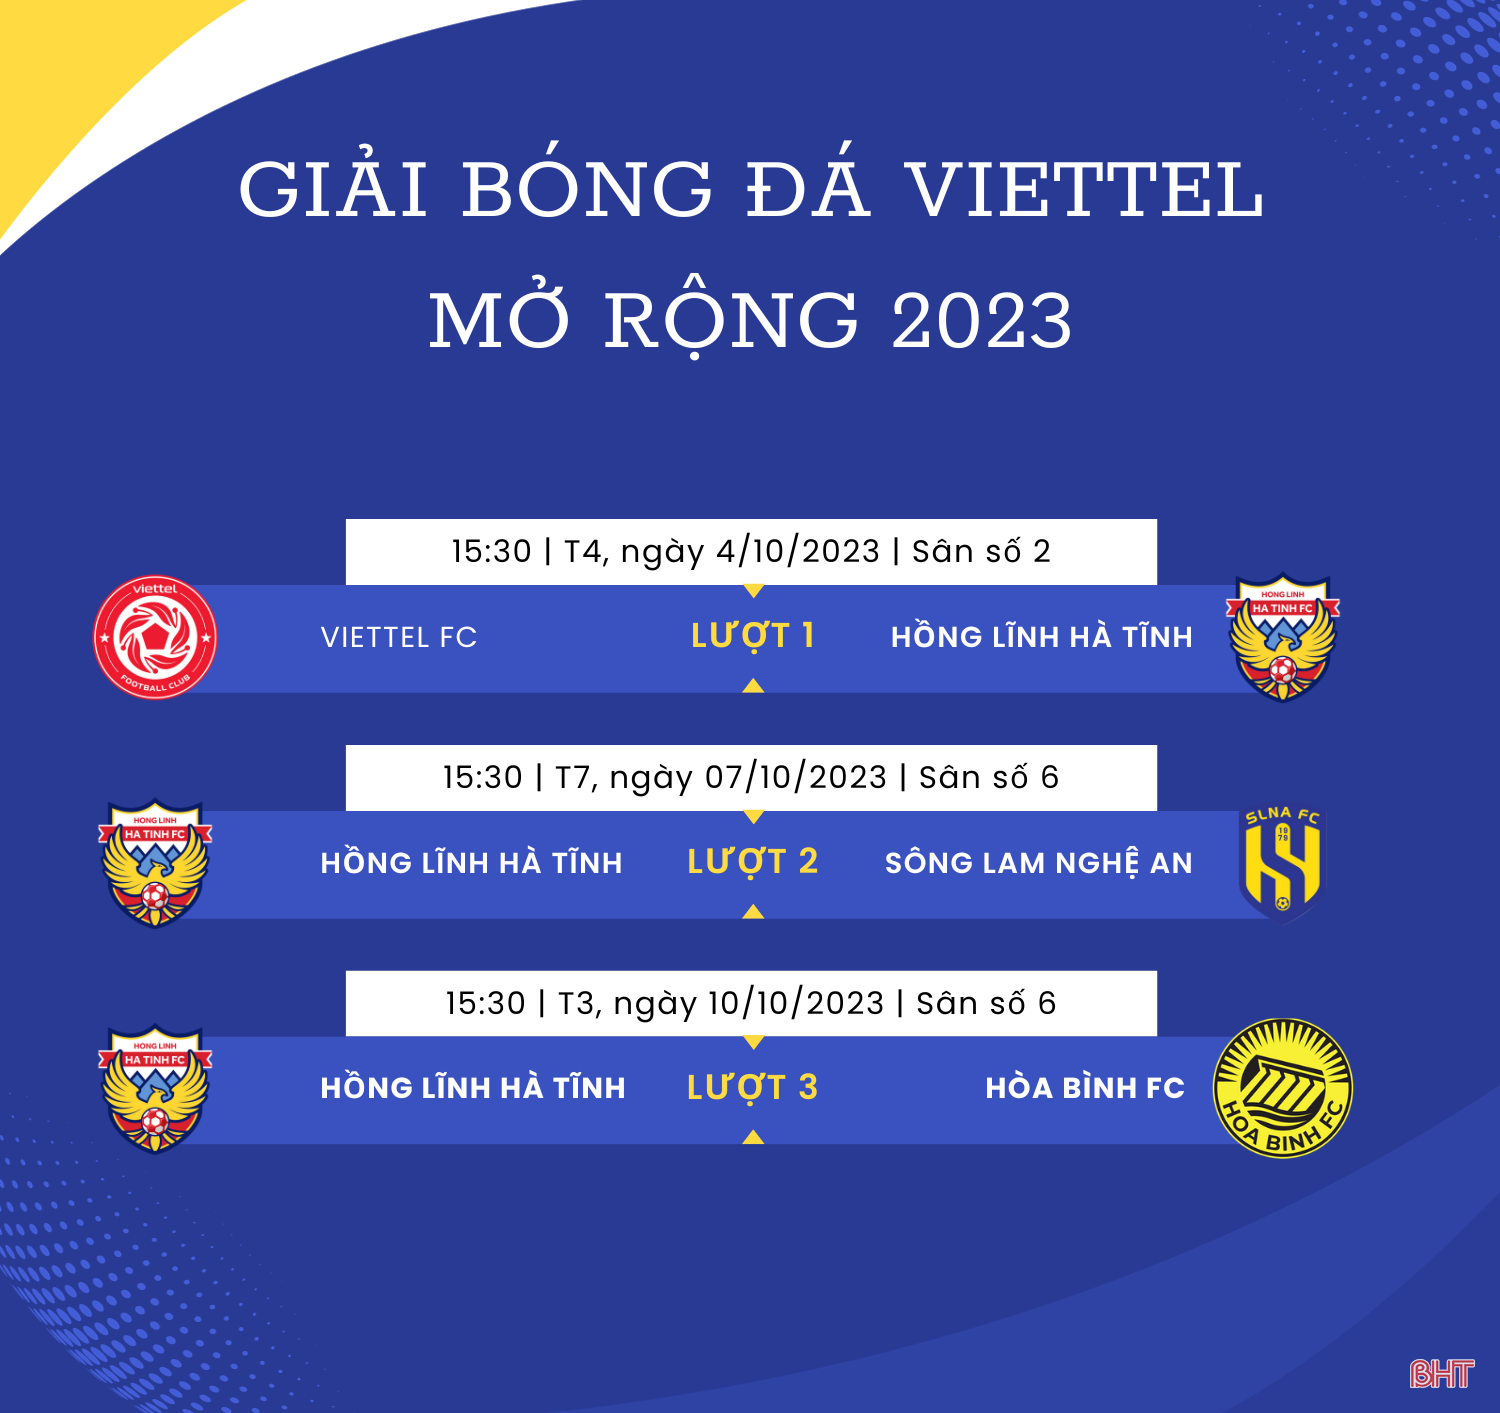 Hồng Lĩnh Hà Tĩnh tham dự cup Viettel mở rộng 2023